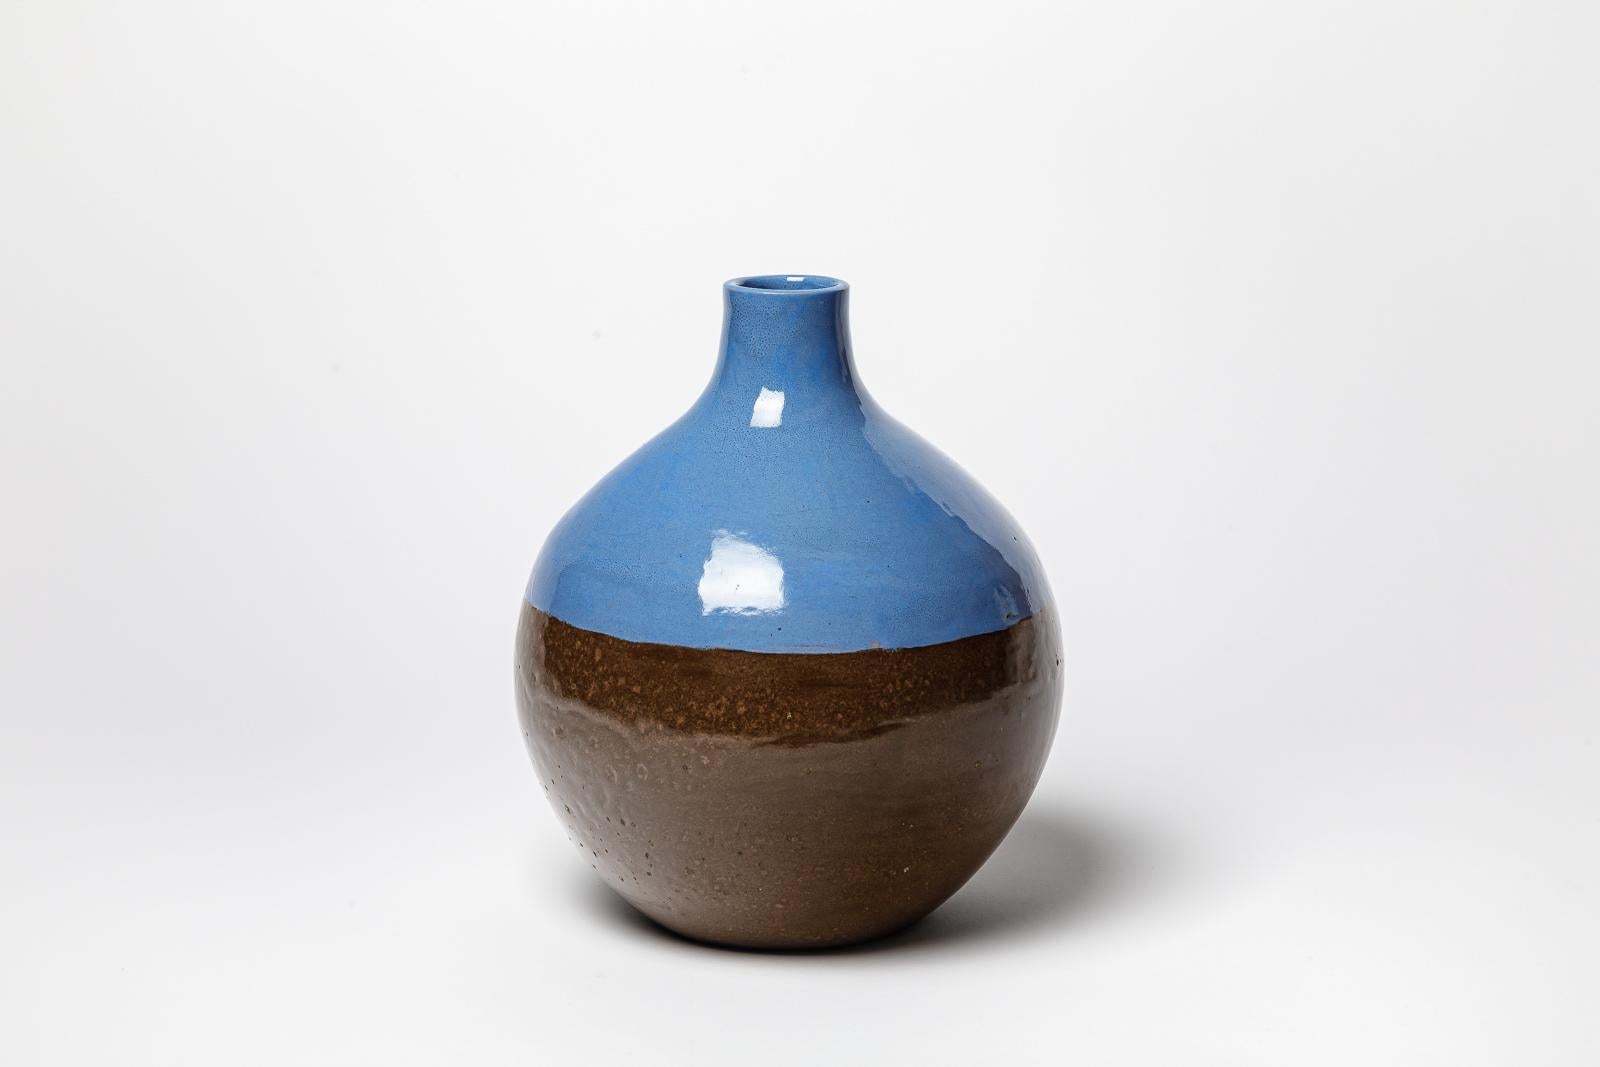 Blue glazed ceramic vase by CAB (Céramiques d’art de Bordeaux) for la Maitrise. 
Artist signature under the base. Circa 1930.
H : 11.02’ x 7.9’ inches.